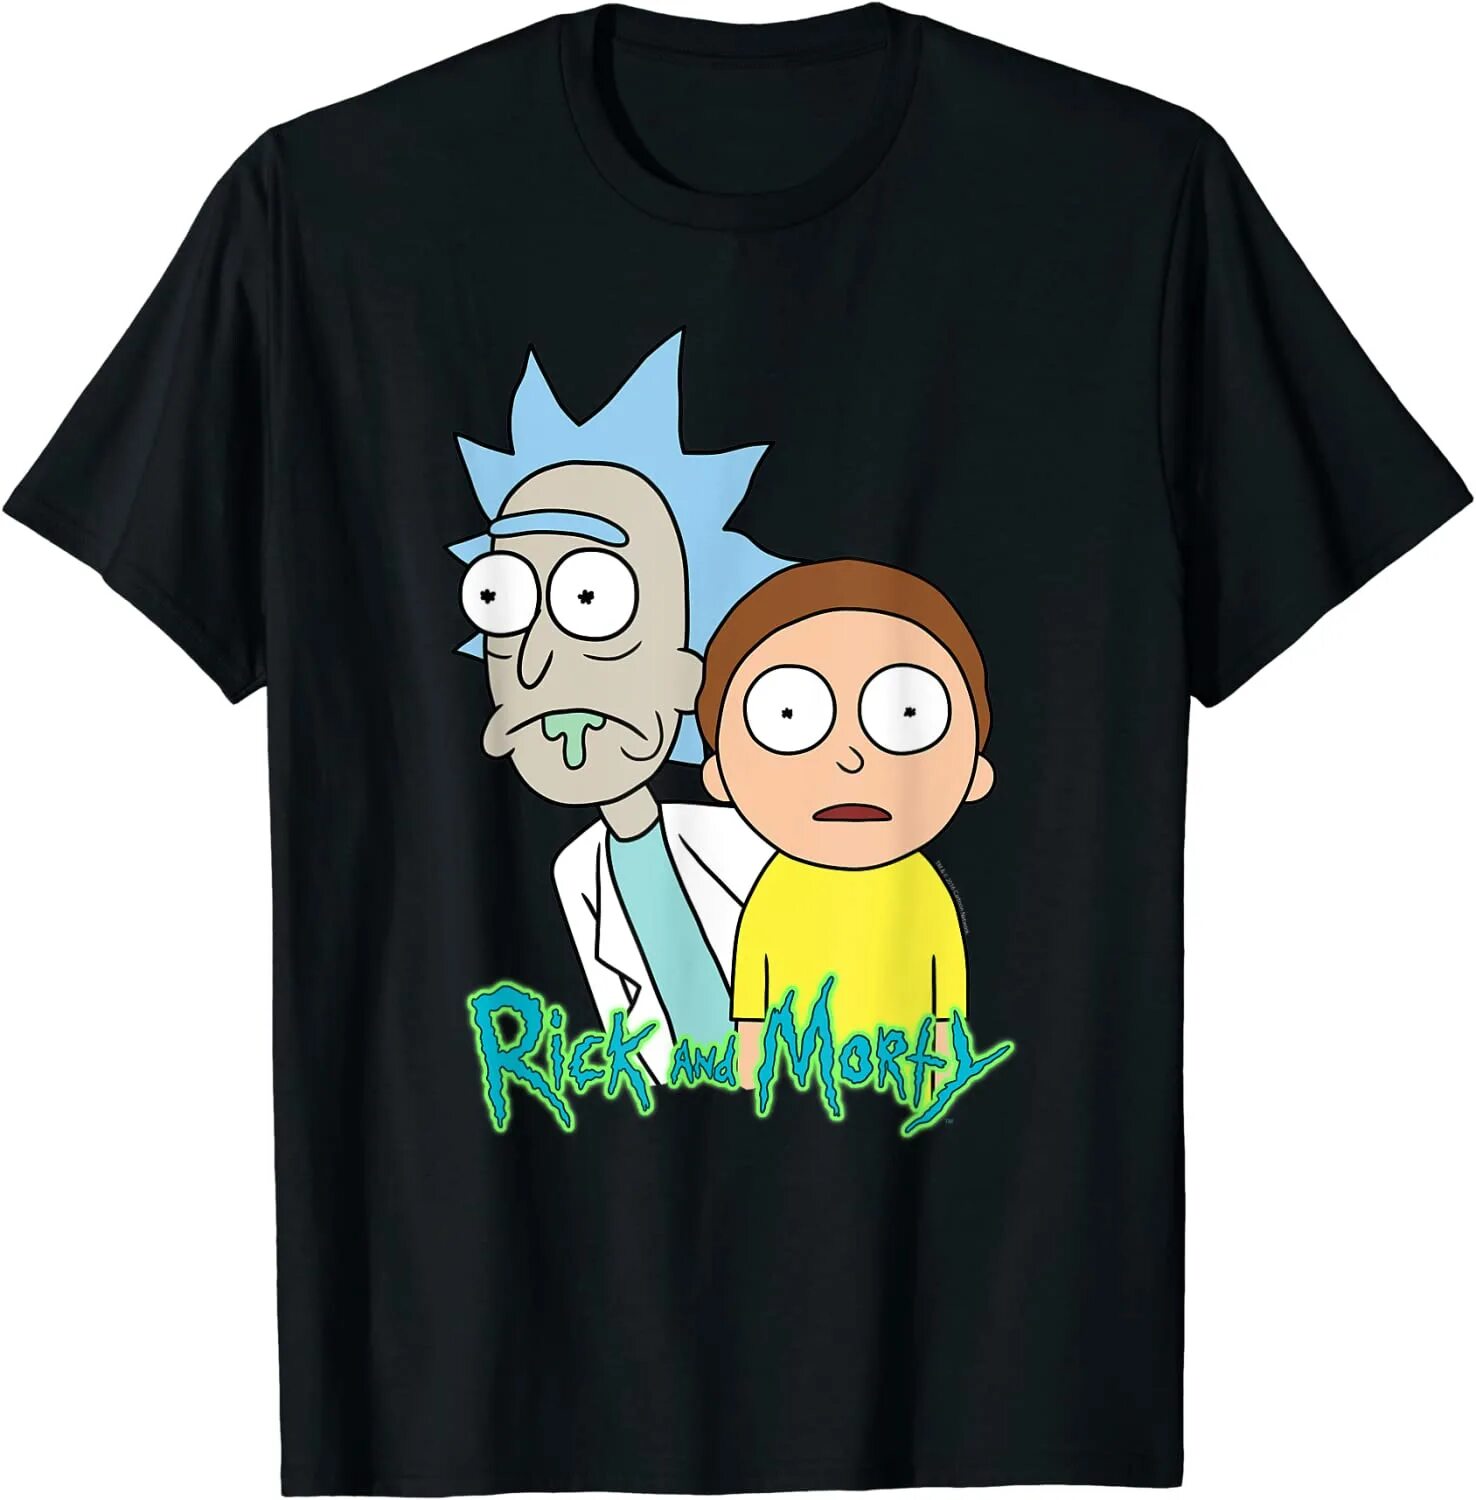 Rick and morty жидкость. Рик и Морти вышивка на футболке. Рубашка и шорты Рик и Морти. Рик и Морти одежда. Футболка Рик и Морти.